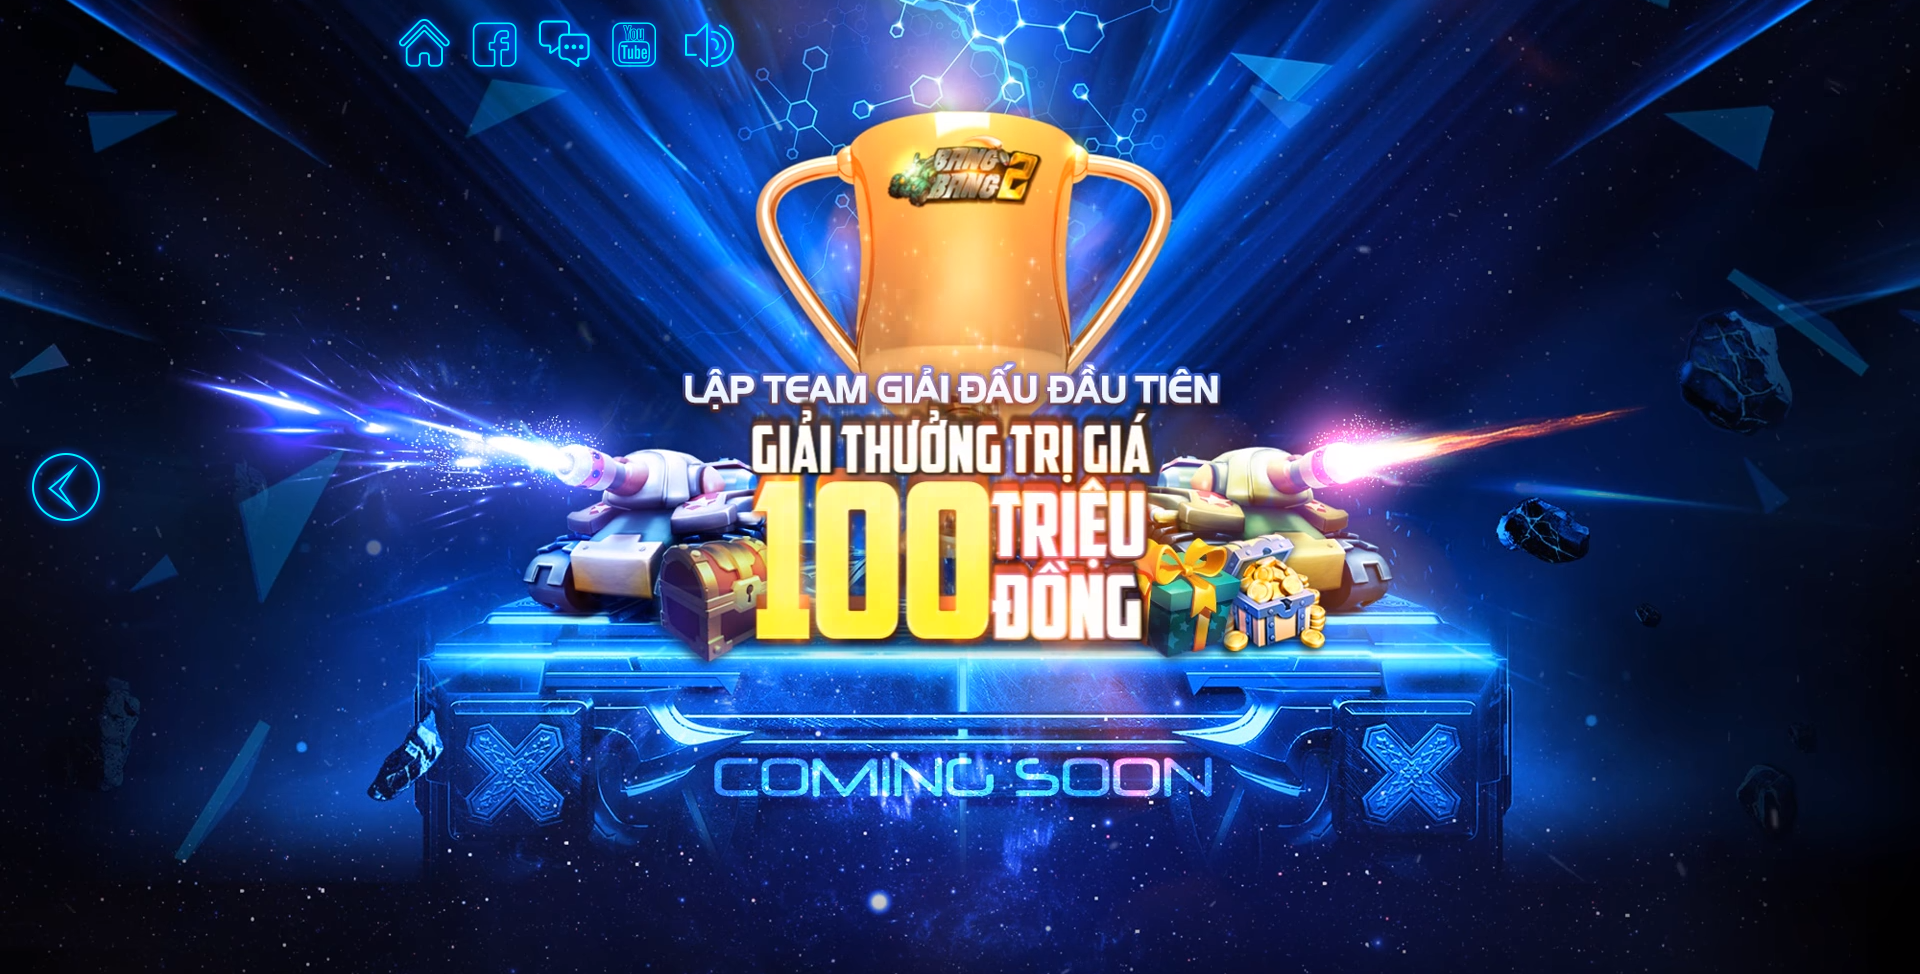 Chưa ra mắt BangBang 2 đã khuấy động làng game Việt với giải đấu 100 triệu VNĐ